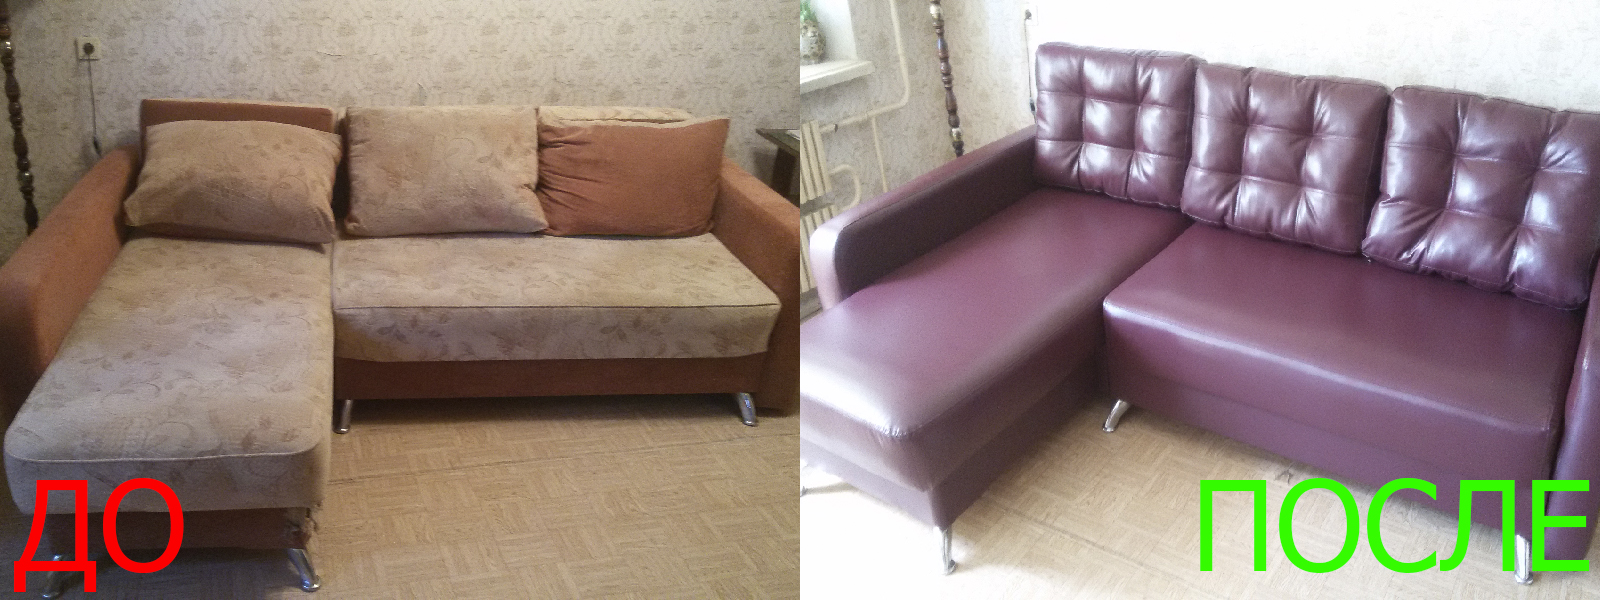 Ремонт диванов искусственной кожей в Евпатории разумные цены на услуги, опытные специалисты